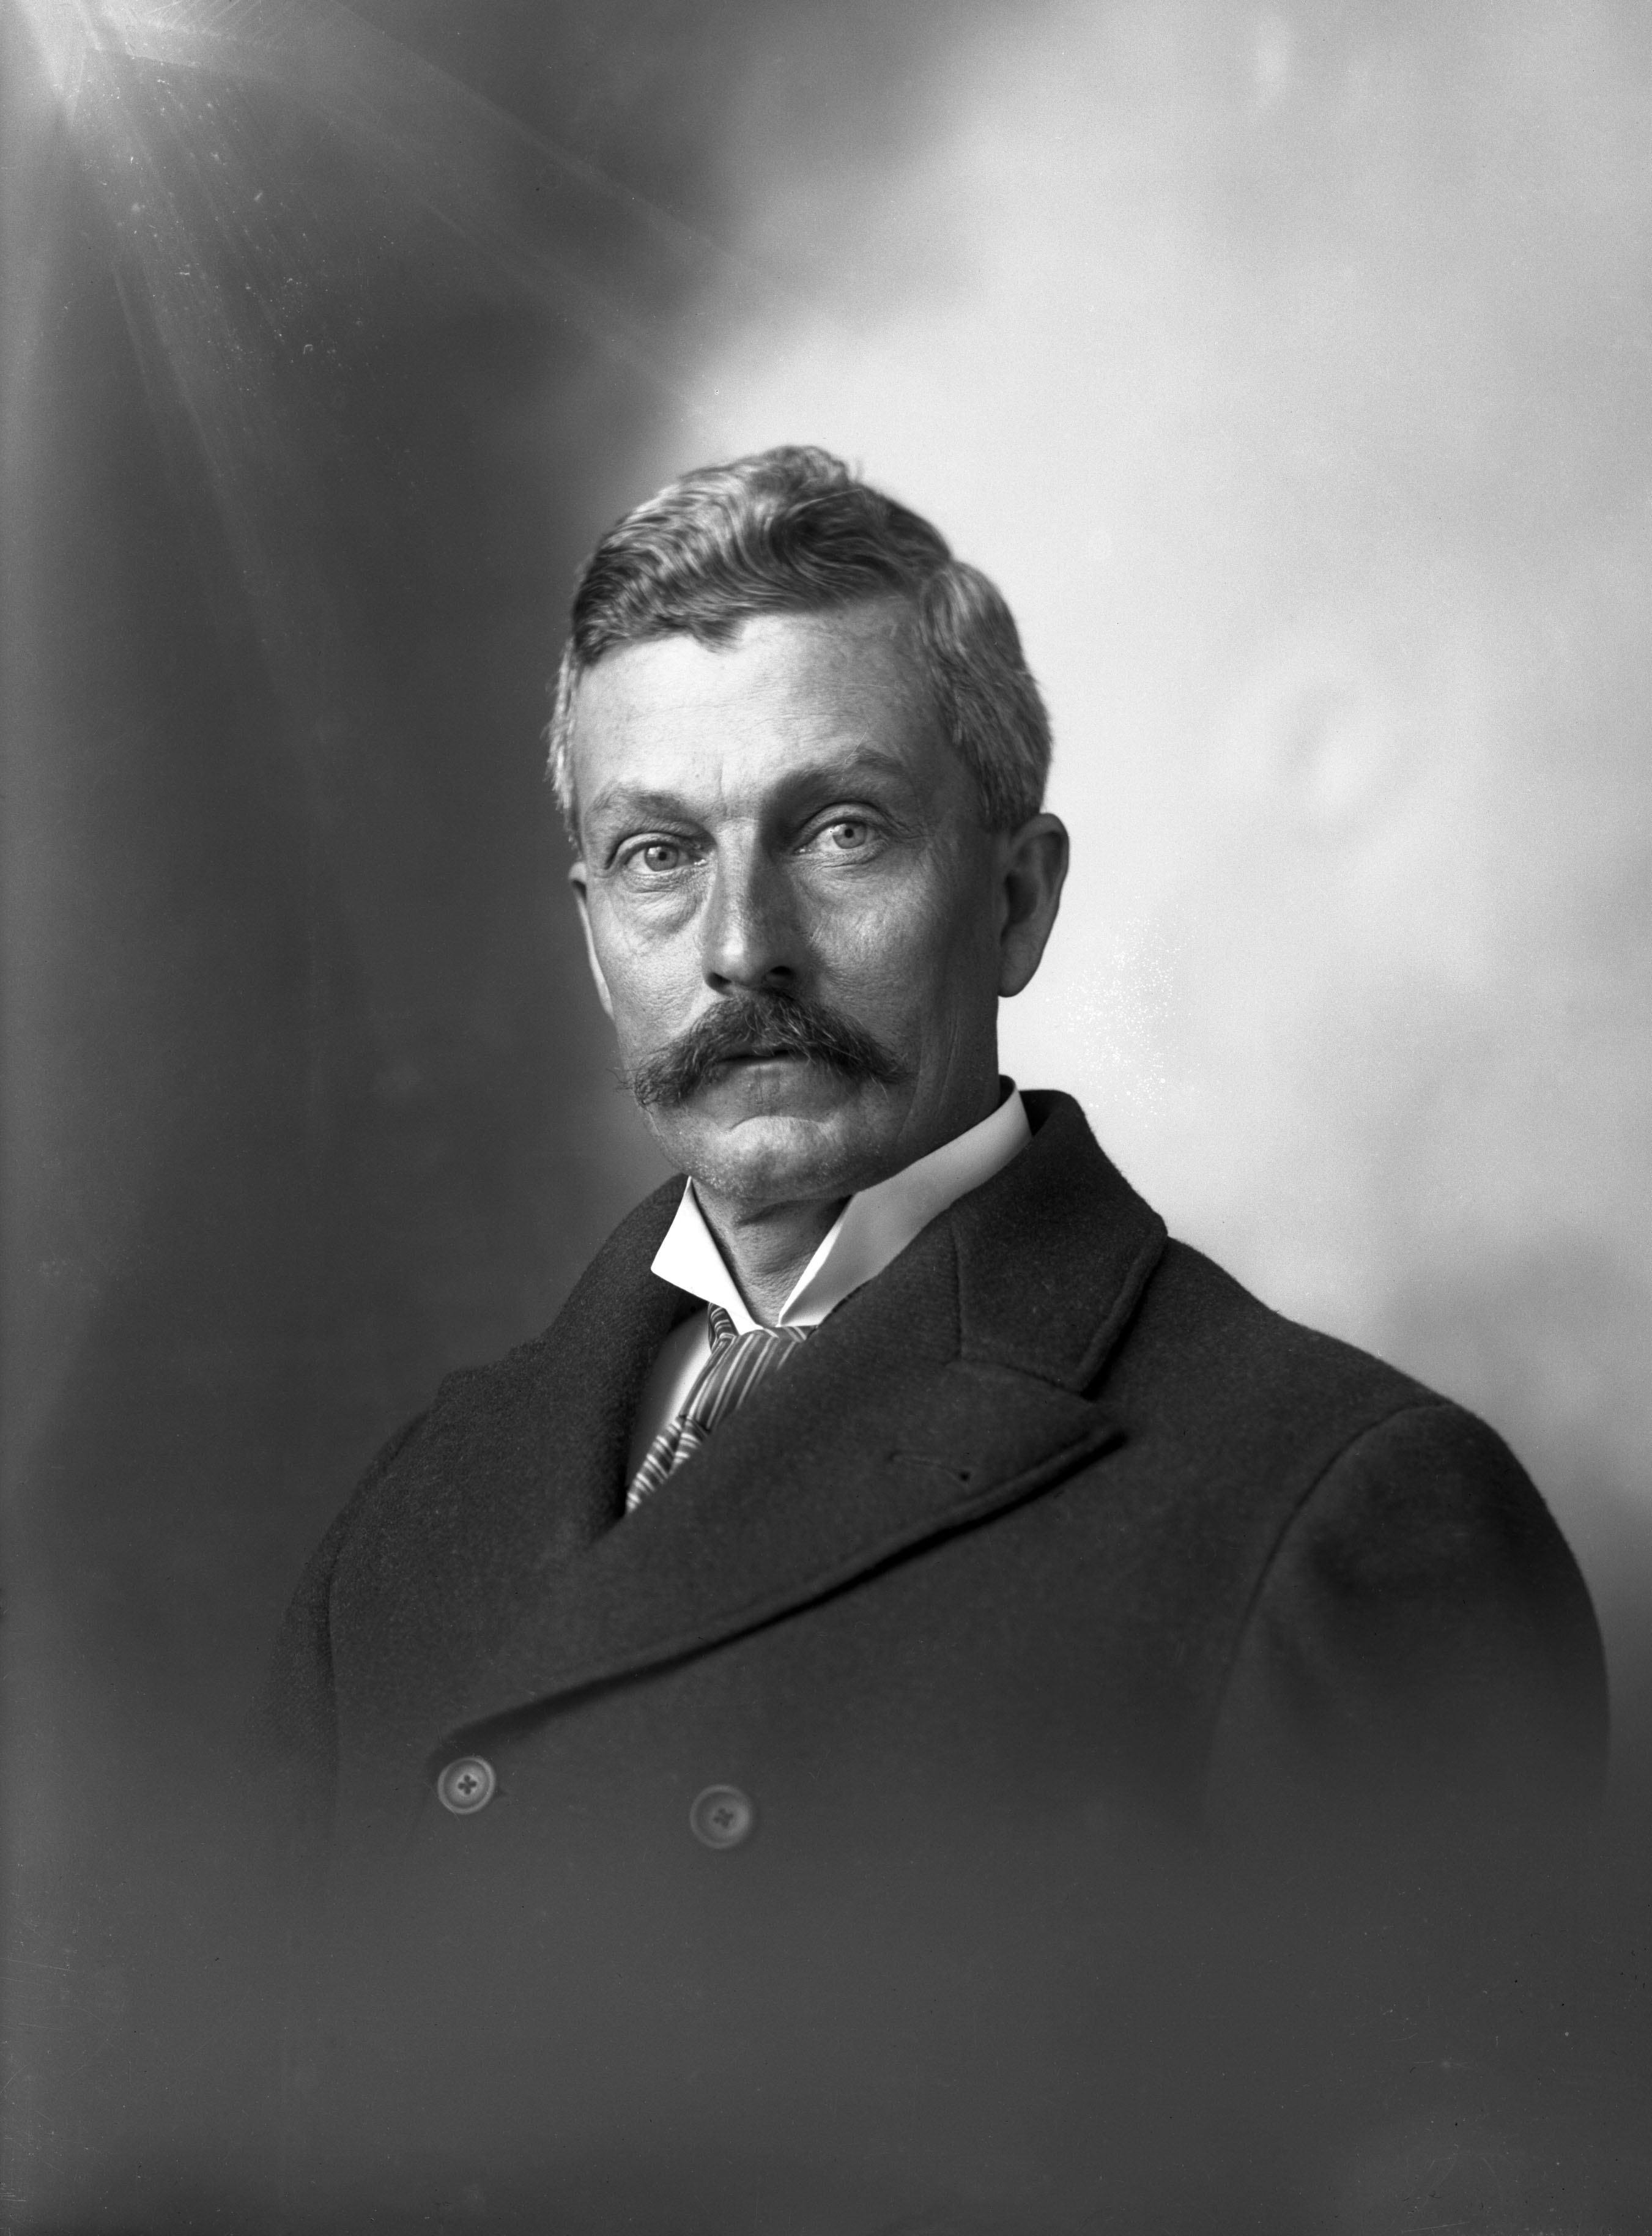 John W. Taylor